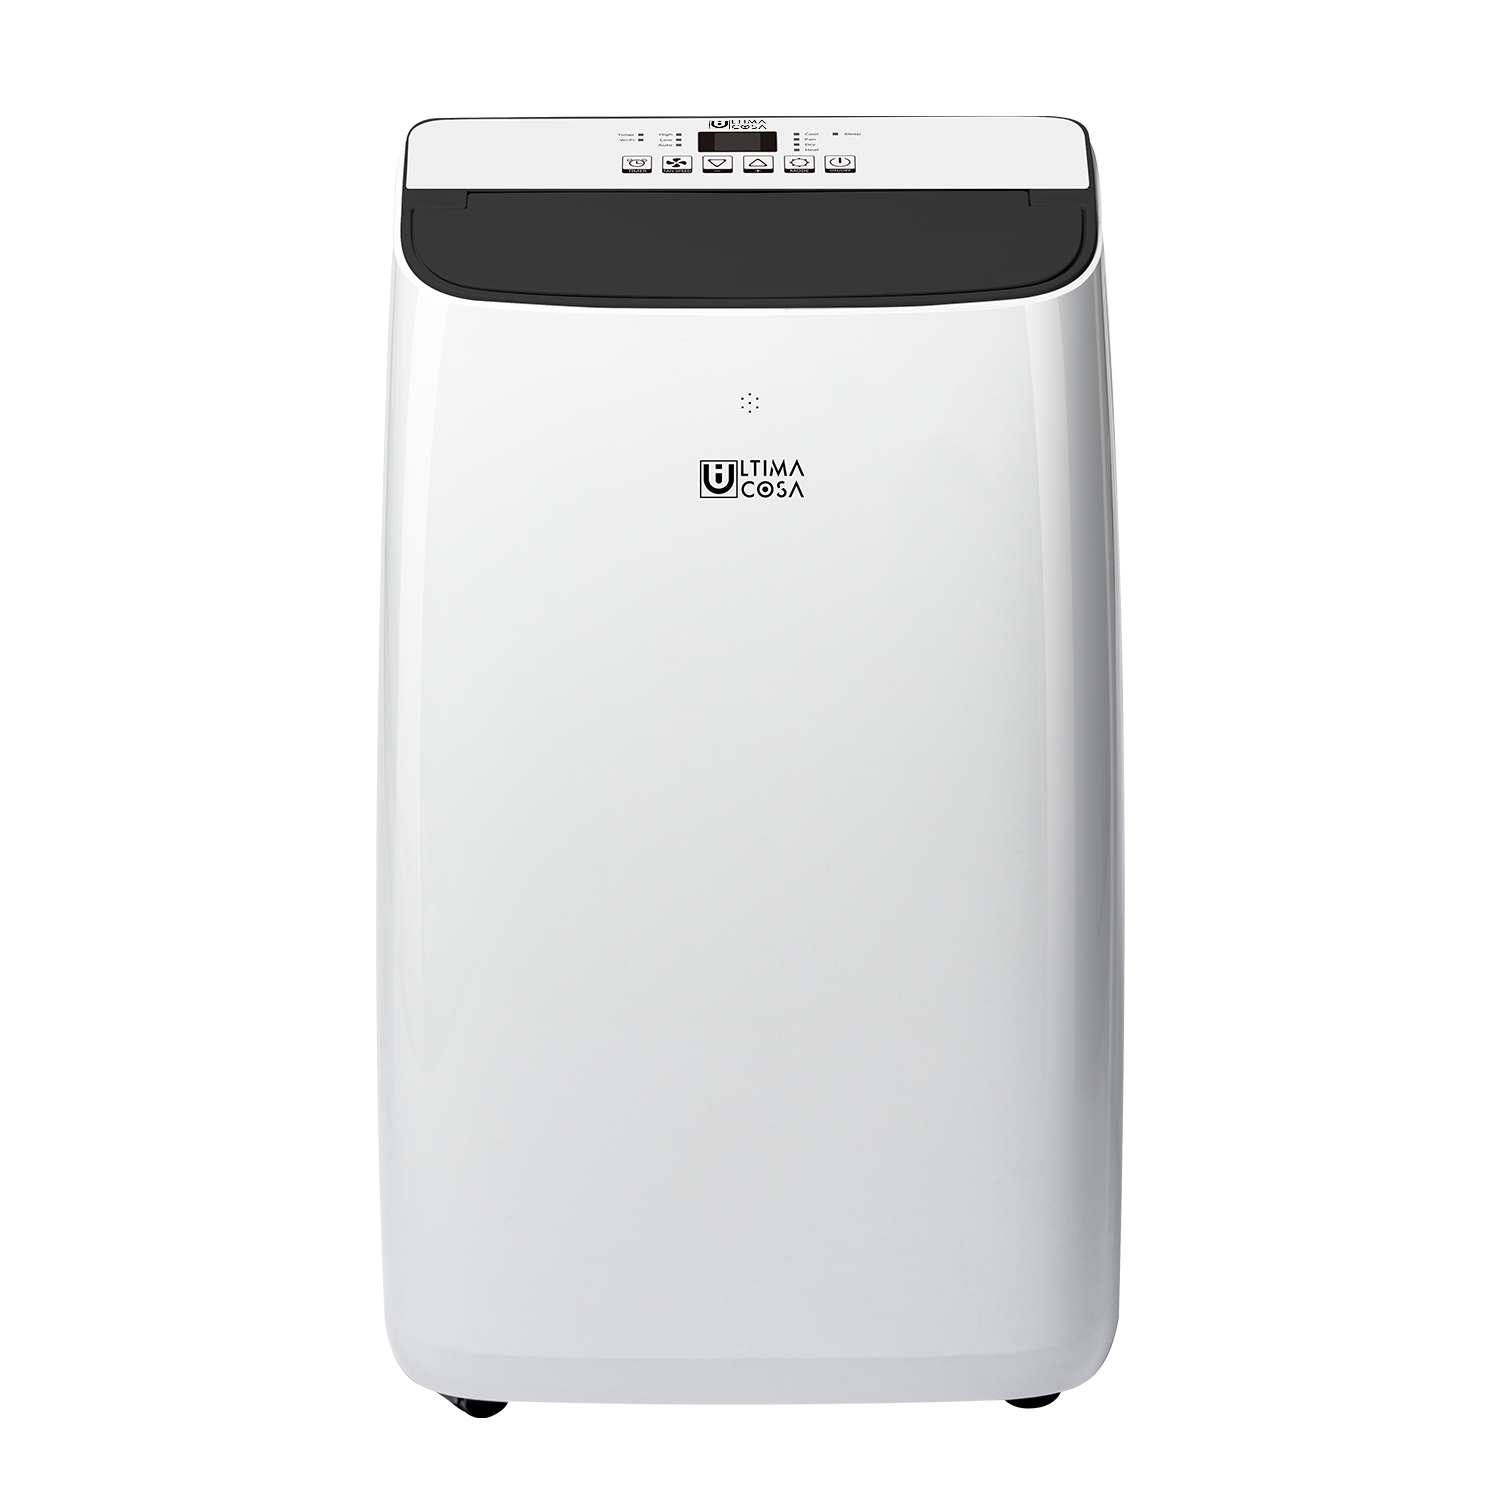 Ultima Cosa Aria Clima 4-in-1 Smart Portable Air Conditioner